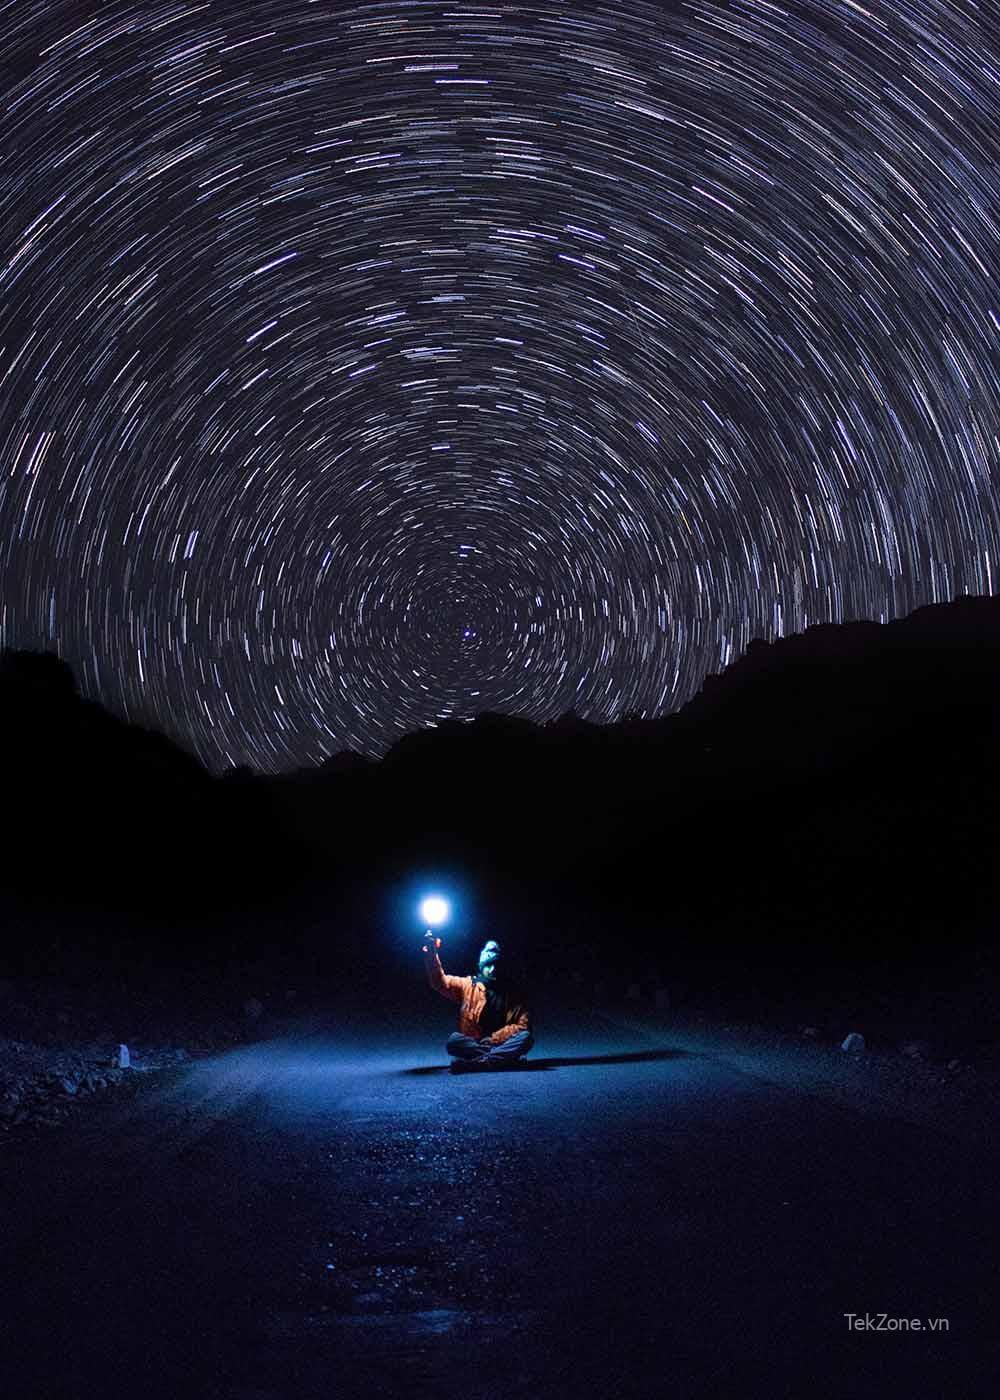 Bầu trời đêm với những vệt sao tròn có hình bóng của một ngọn đồi.  Phía trước có một người ngồi bắt chéo chân trên đường, tay cầm đèn.